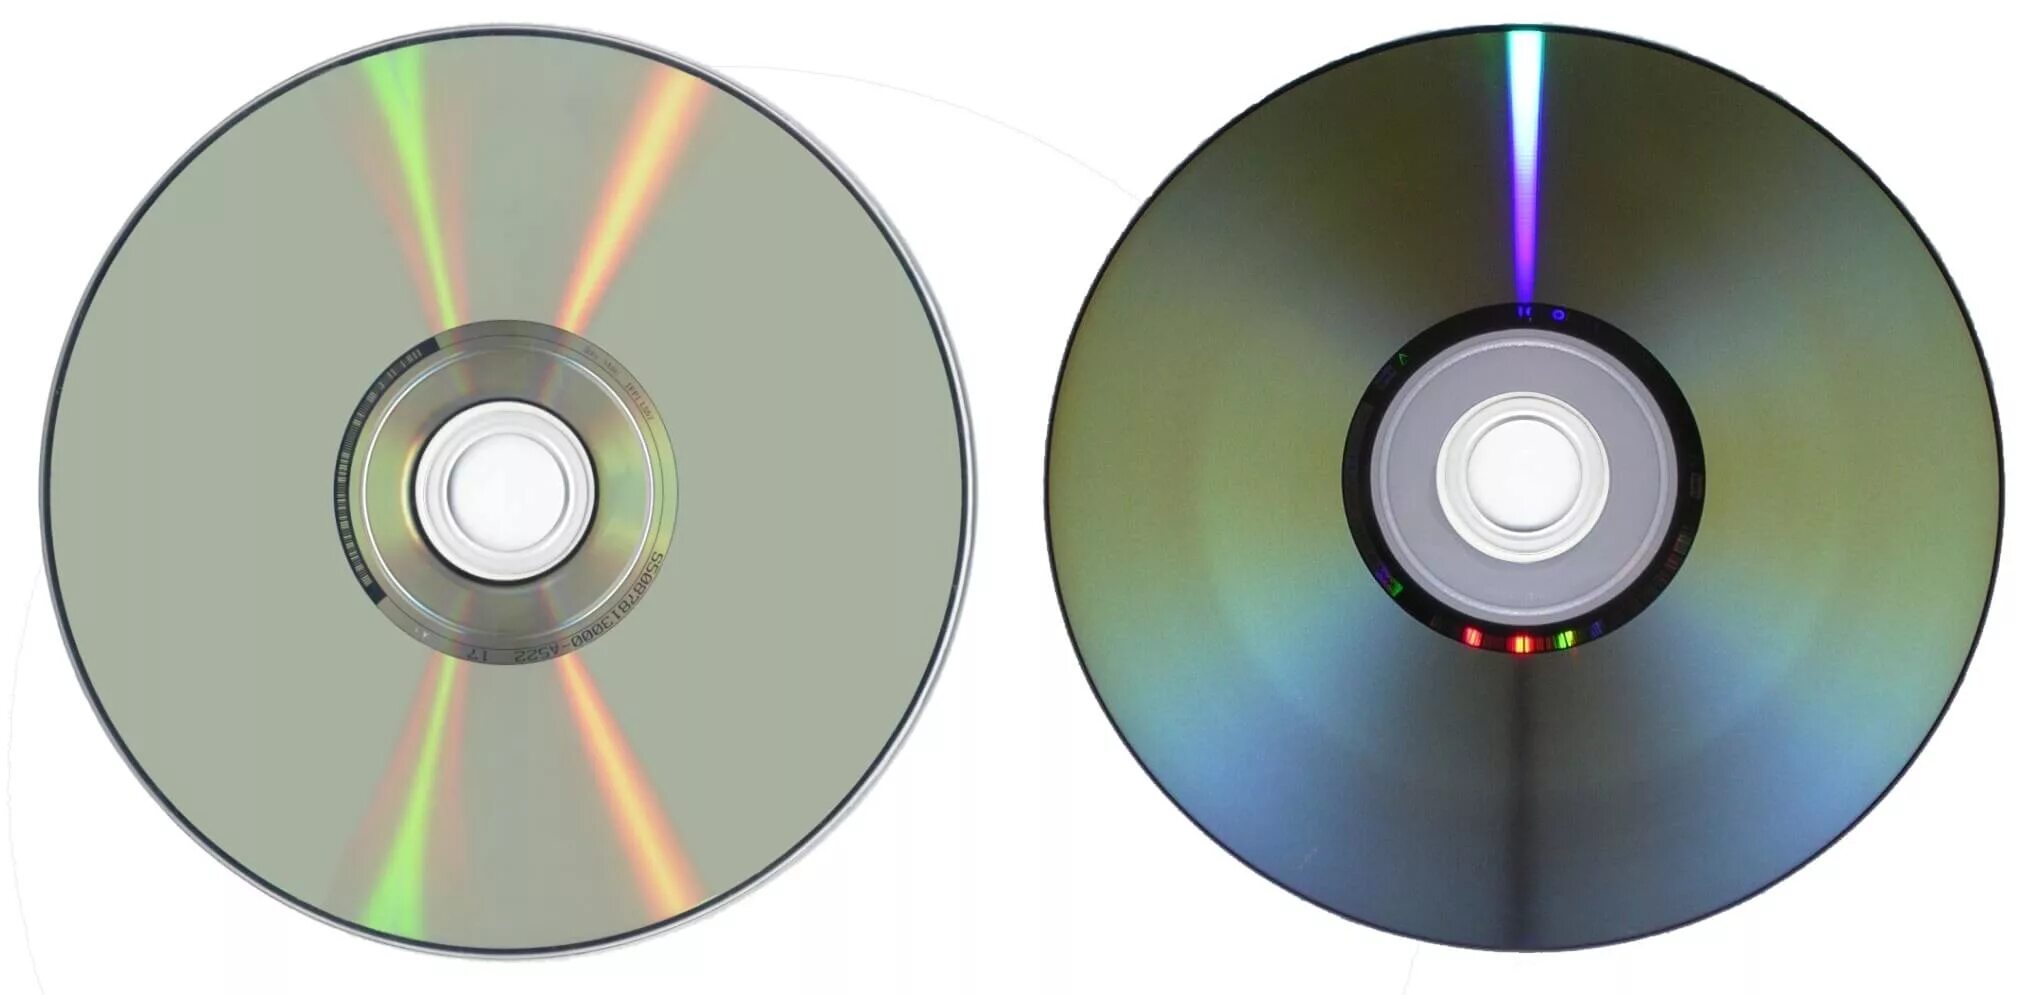 Стандарт DVD (Digital versatile Disc). Компакт-диски CD. Оптический диск. DVD изображение.